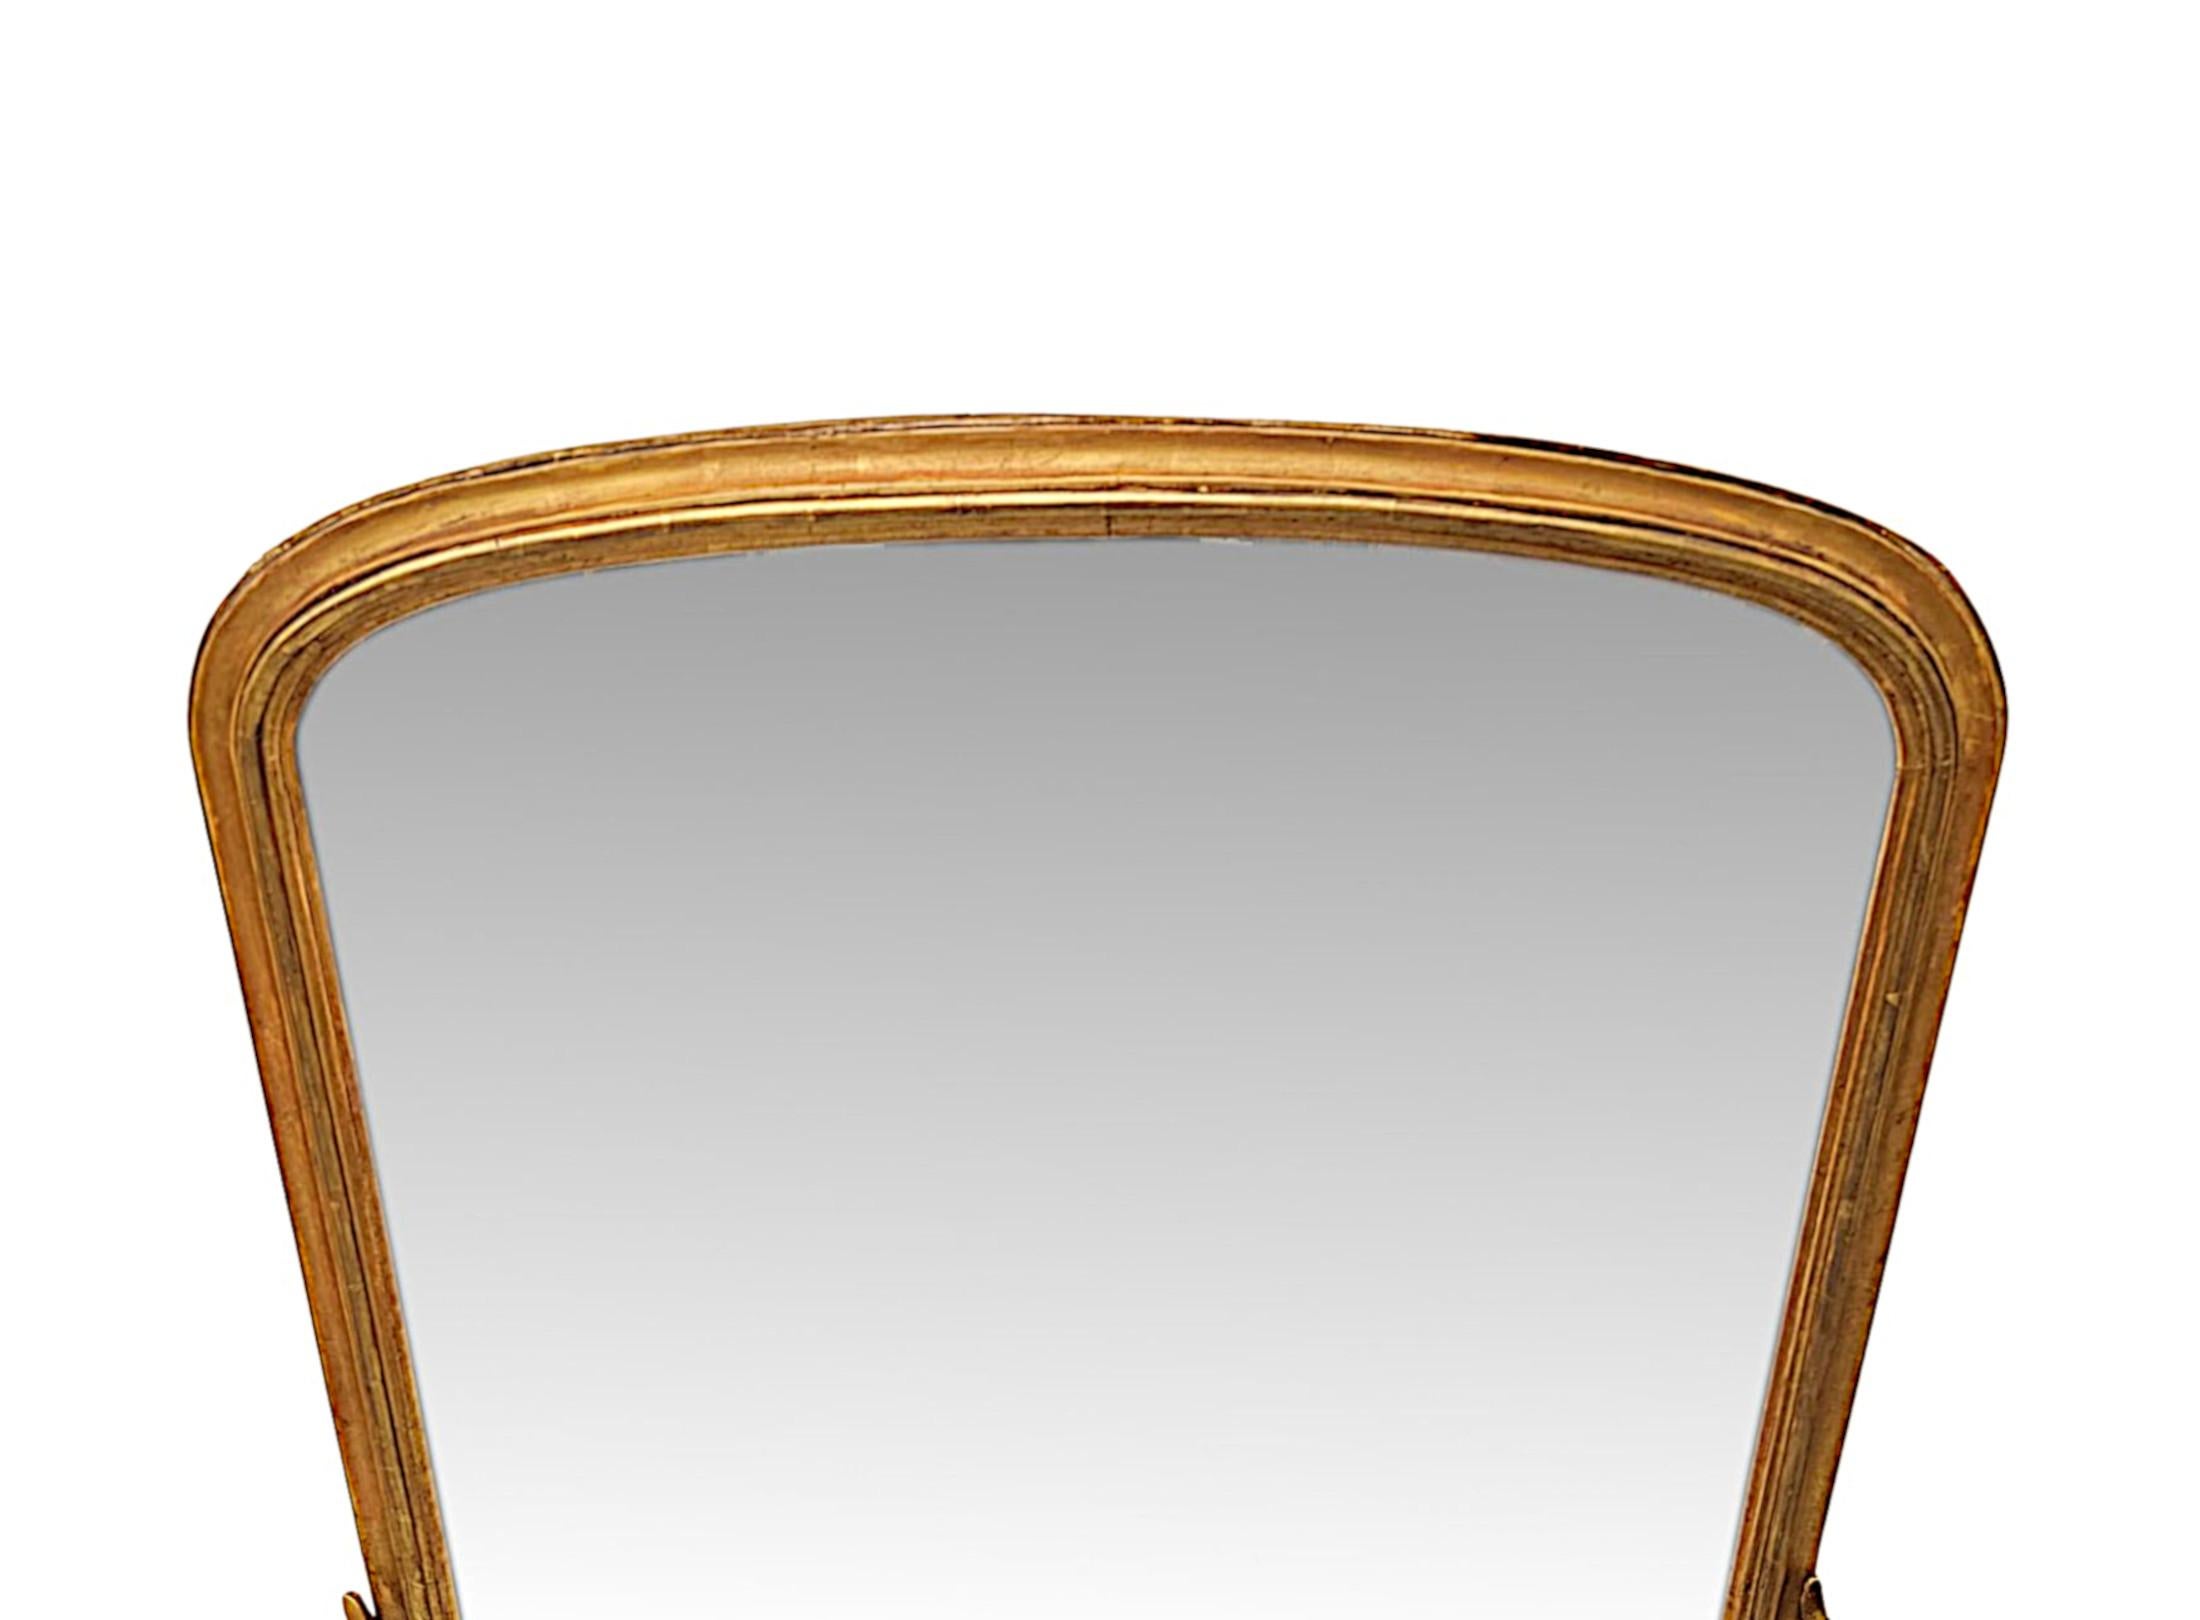 Eine fabelhafte 19. Jahrhundert vergoldet archtop overmantel Spiegel der ordentlichen Proportionen und außergewöhnliche Qualität.  Die geformte Spiegelglasplatte befindet sich in einem fein handgeschnitzten, einfachen, geformten, geriffelten und